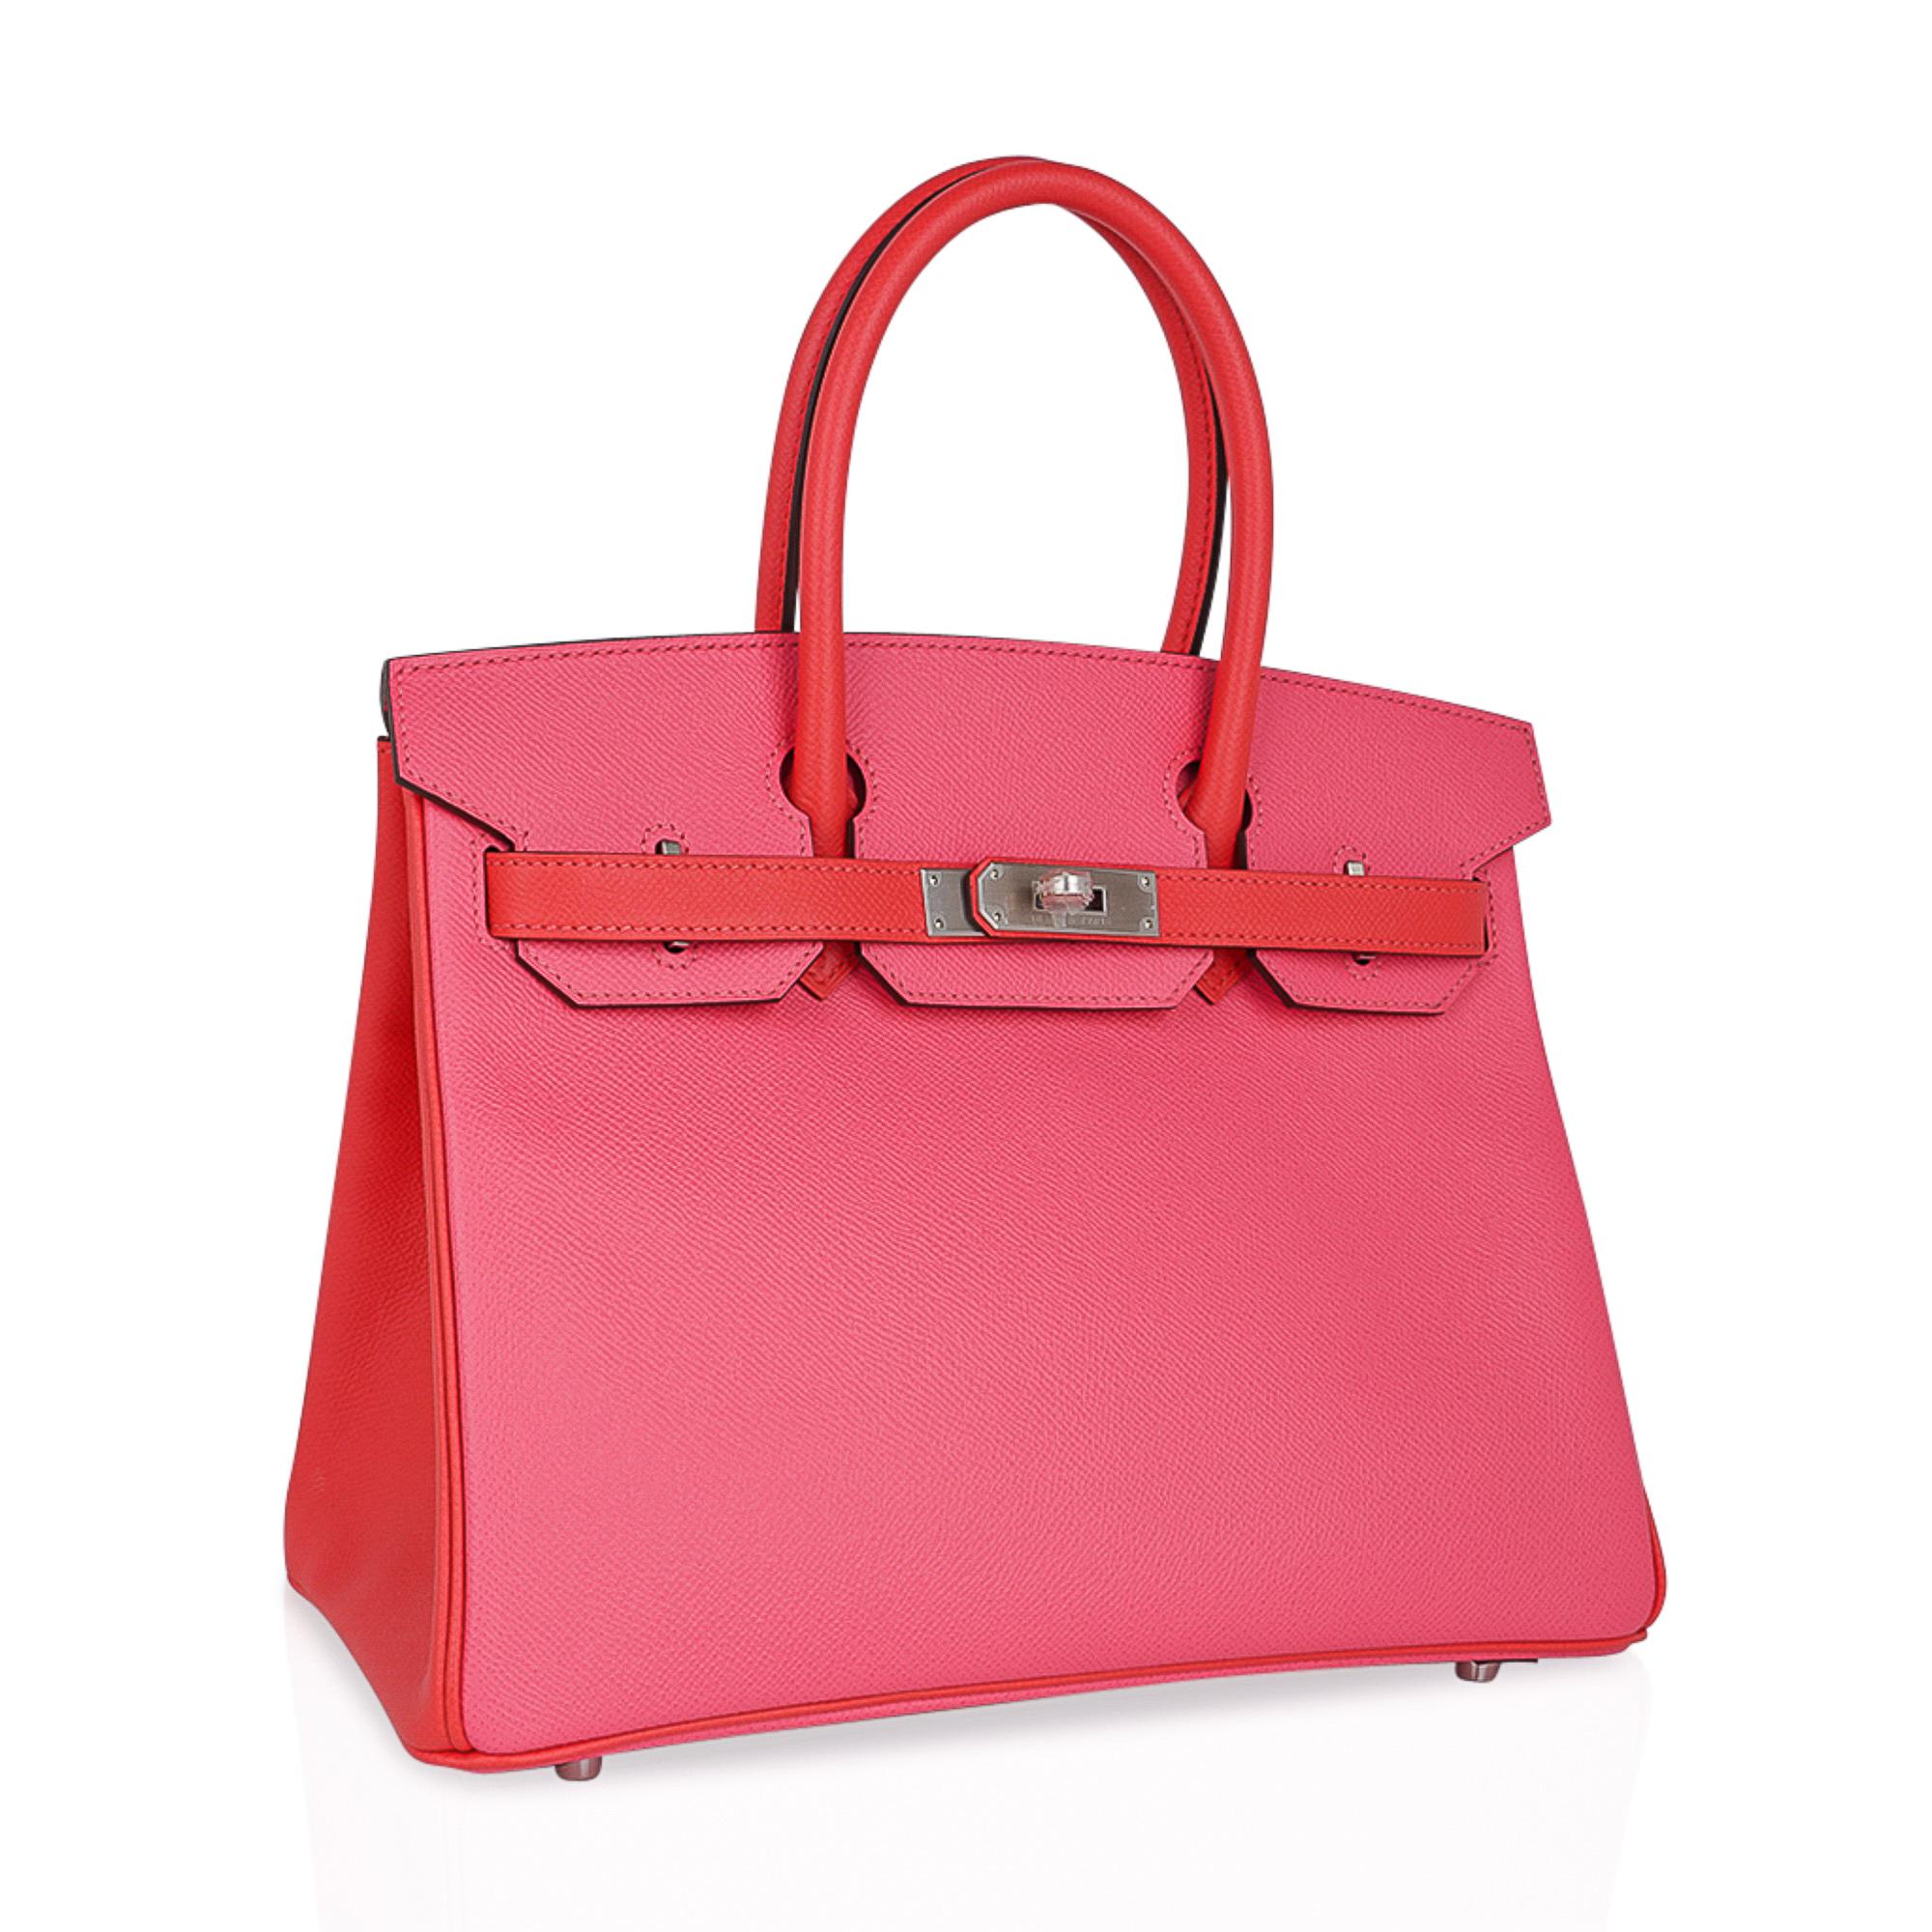 Mightychic bietet eine Hermes Birkin 30 HSS Sonderbestellung Tasche in begehrten Rose Azalee und Rose Jaipur.
Lebendige, poppige, erwachsene Pinks. Wunderschöne weiche Rosatöne ergeben eine wunderschöne Tasche. 
Gebürstete Palladium-Beschläge.
Kommt